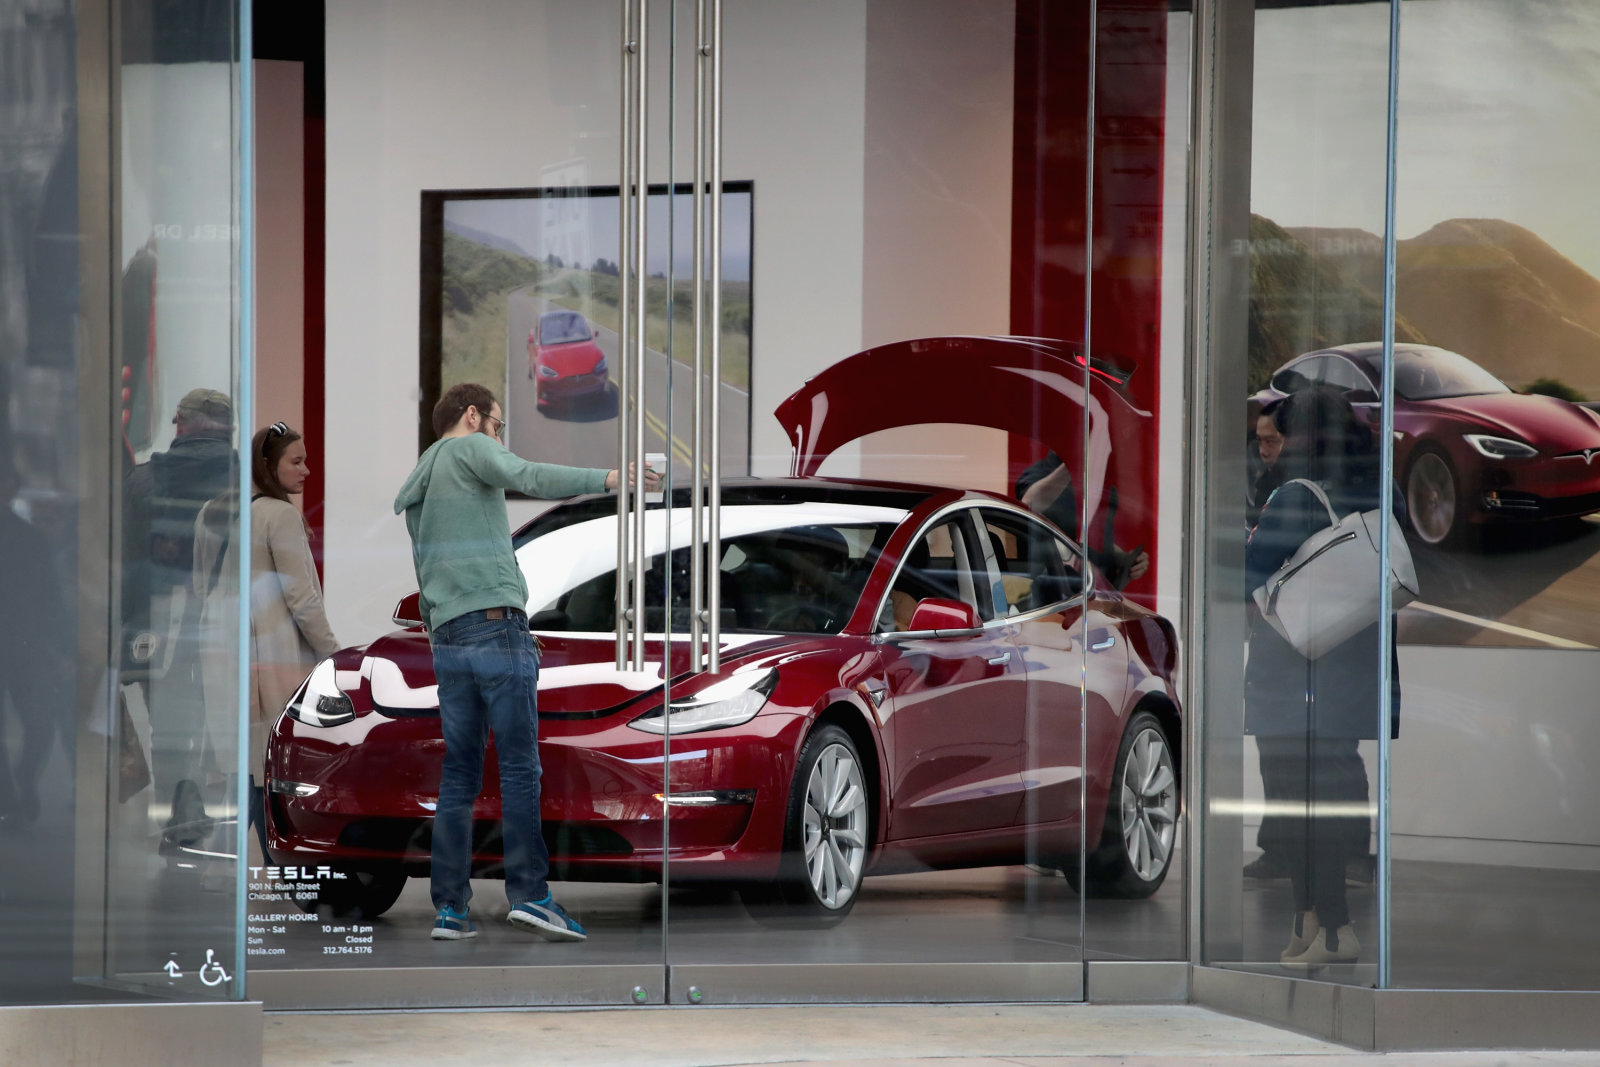 Выход электромобиля Tesla Model 3 на международный рынок отложен до середины 2019 года